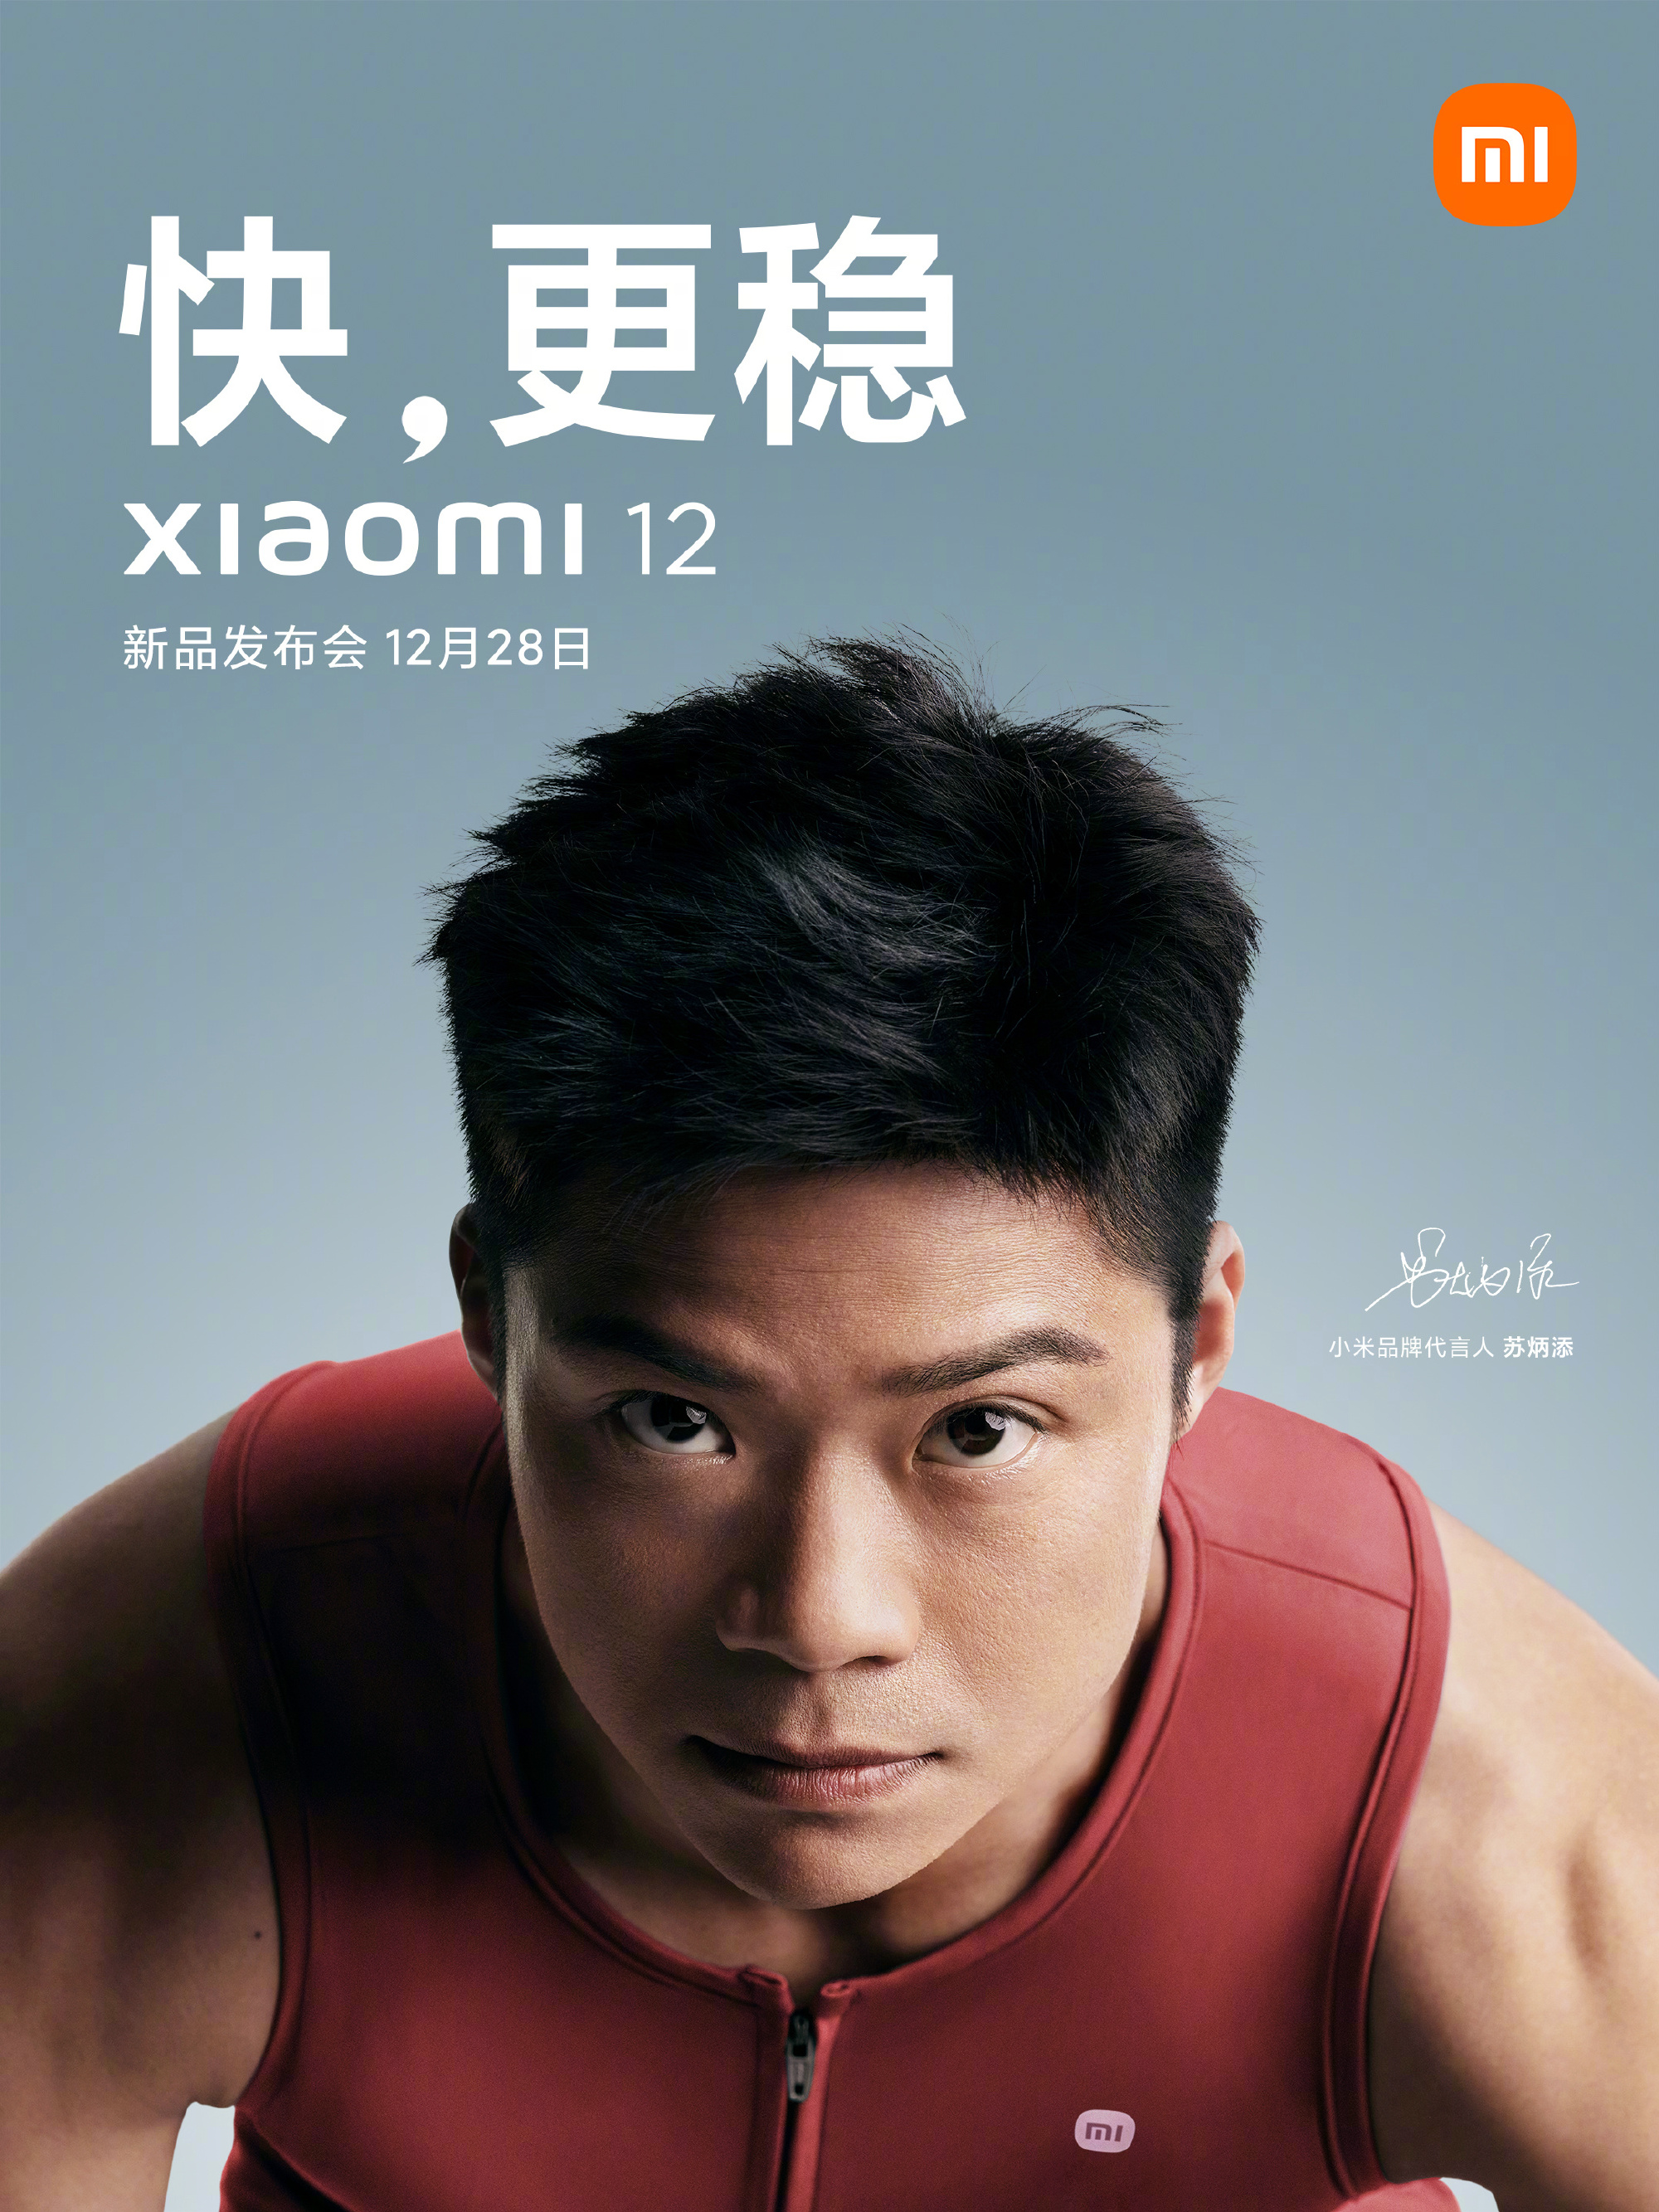 Xiaomi 12 series launch date